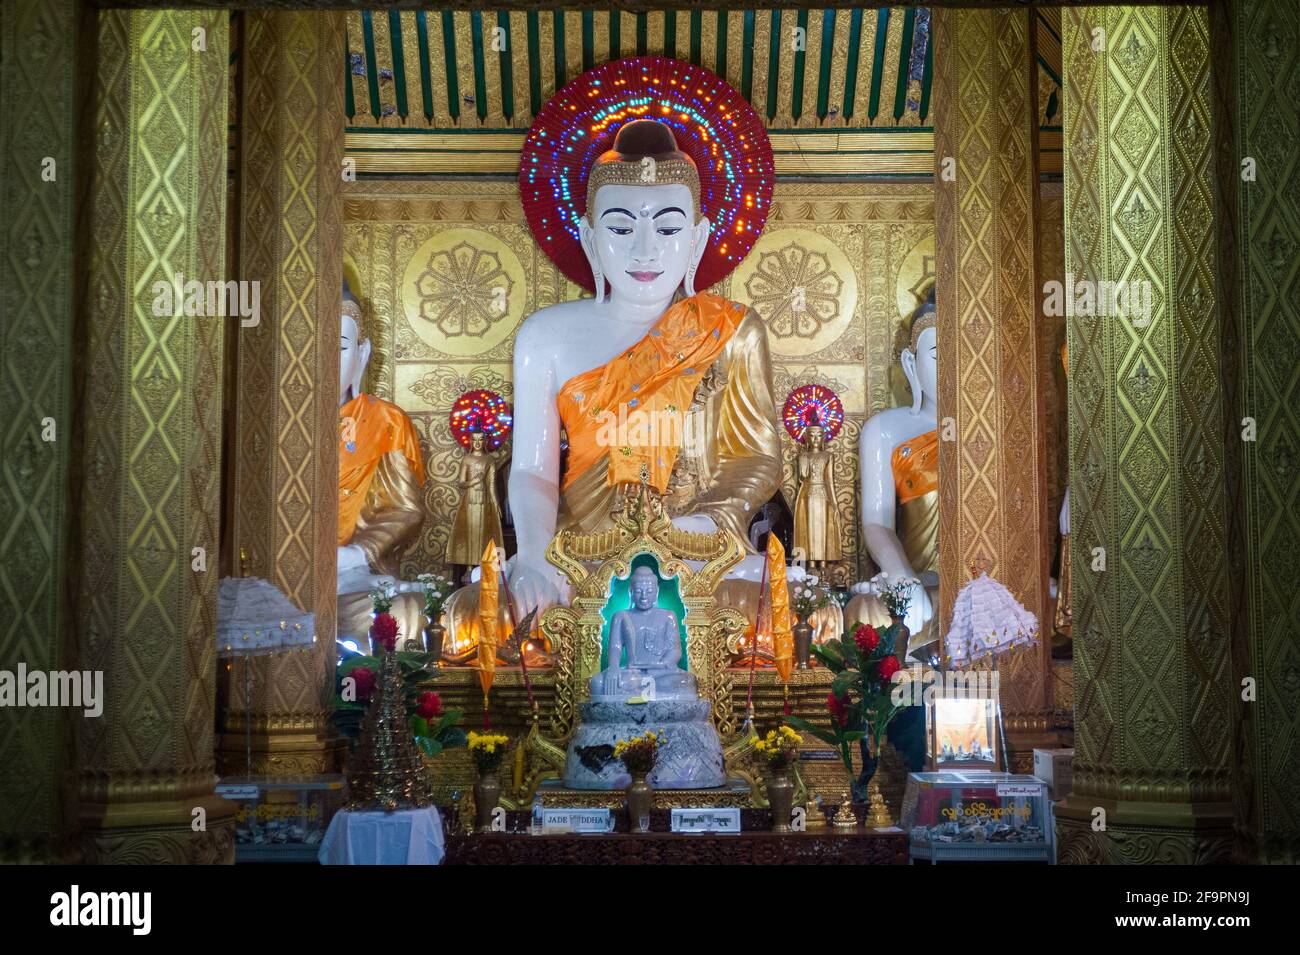 30.01.2017, Mawlamyine, Mon State, Myanmar - Buddha-Gestalt in der Kyaikthanlan-Pagode, der höchsten buddhistischen Pagode der Stadt. 0SL170130D058CAROEX.JPG [M Stockfoto